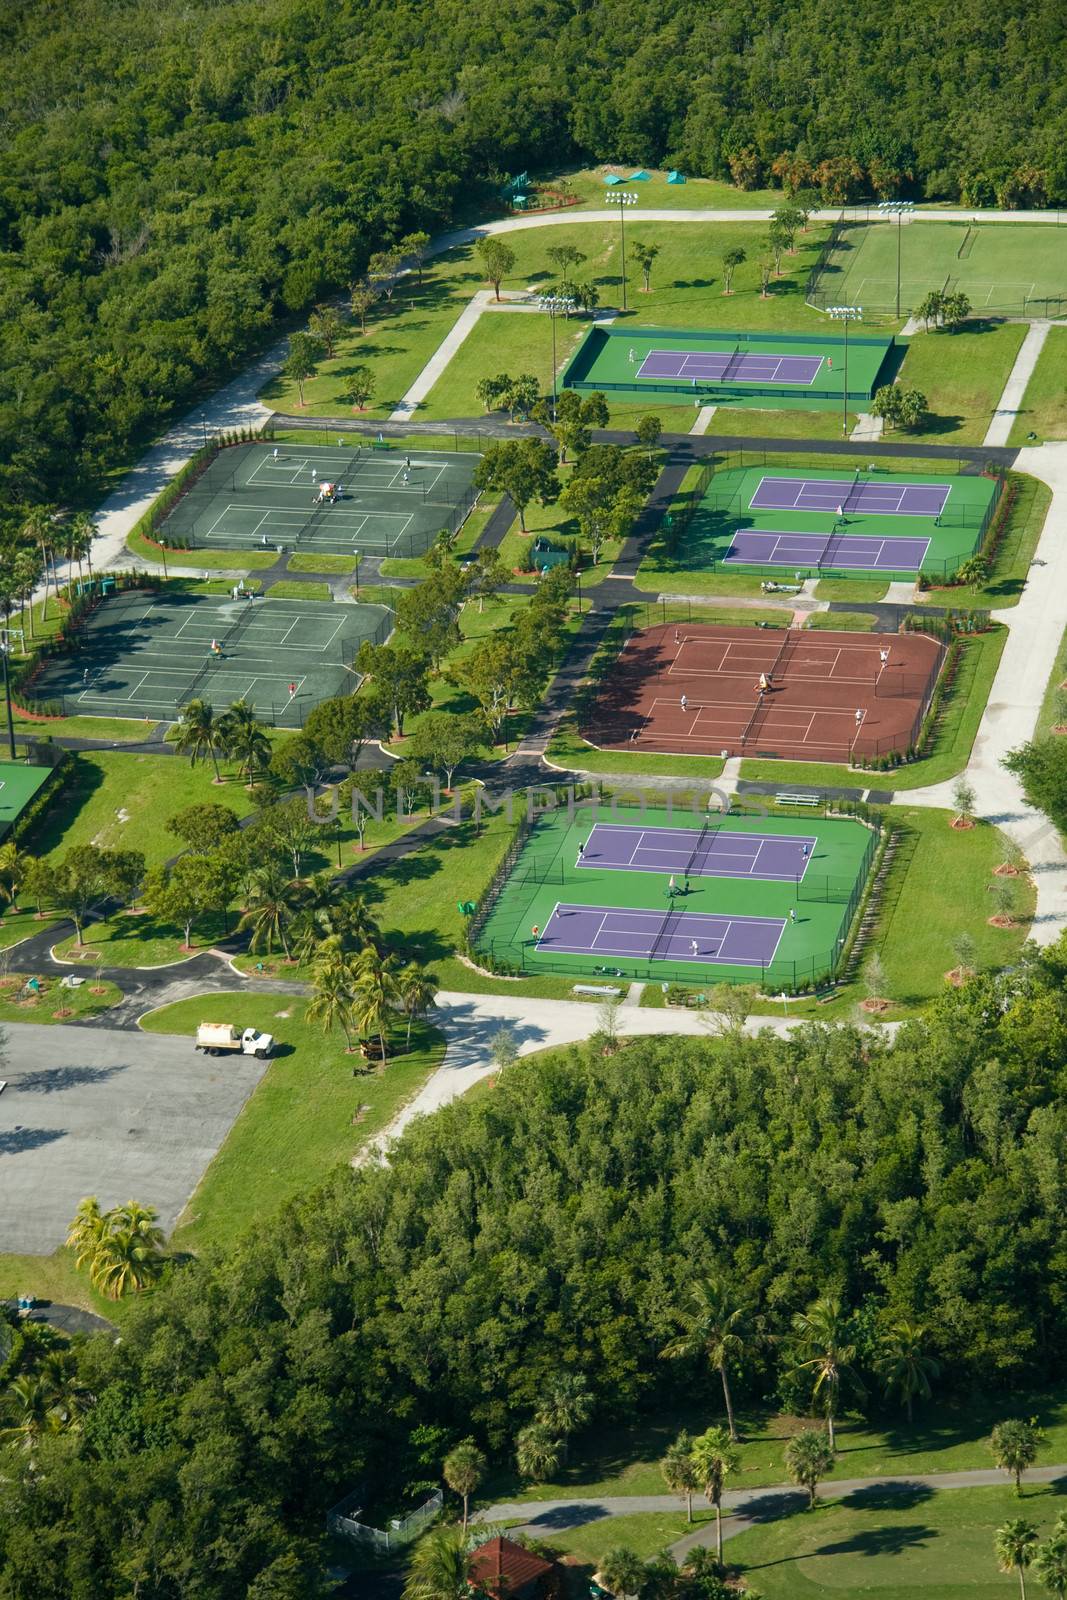 Aerial view of Crandon Park Tennis Center, Key Biscayne, Miami, Florida, U.S.A.